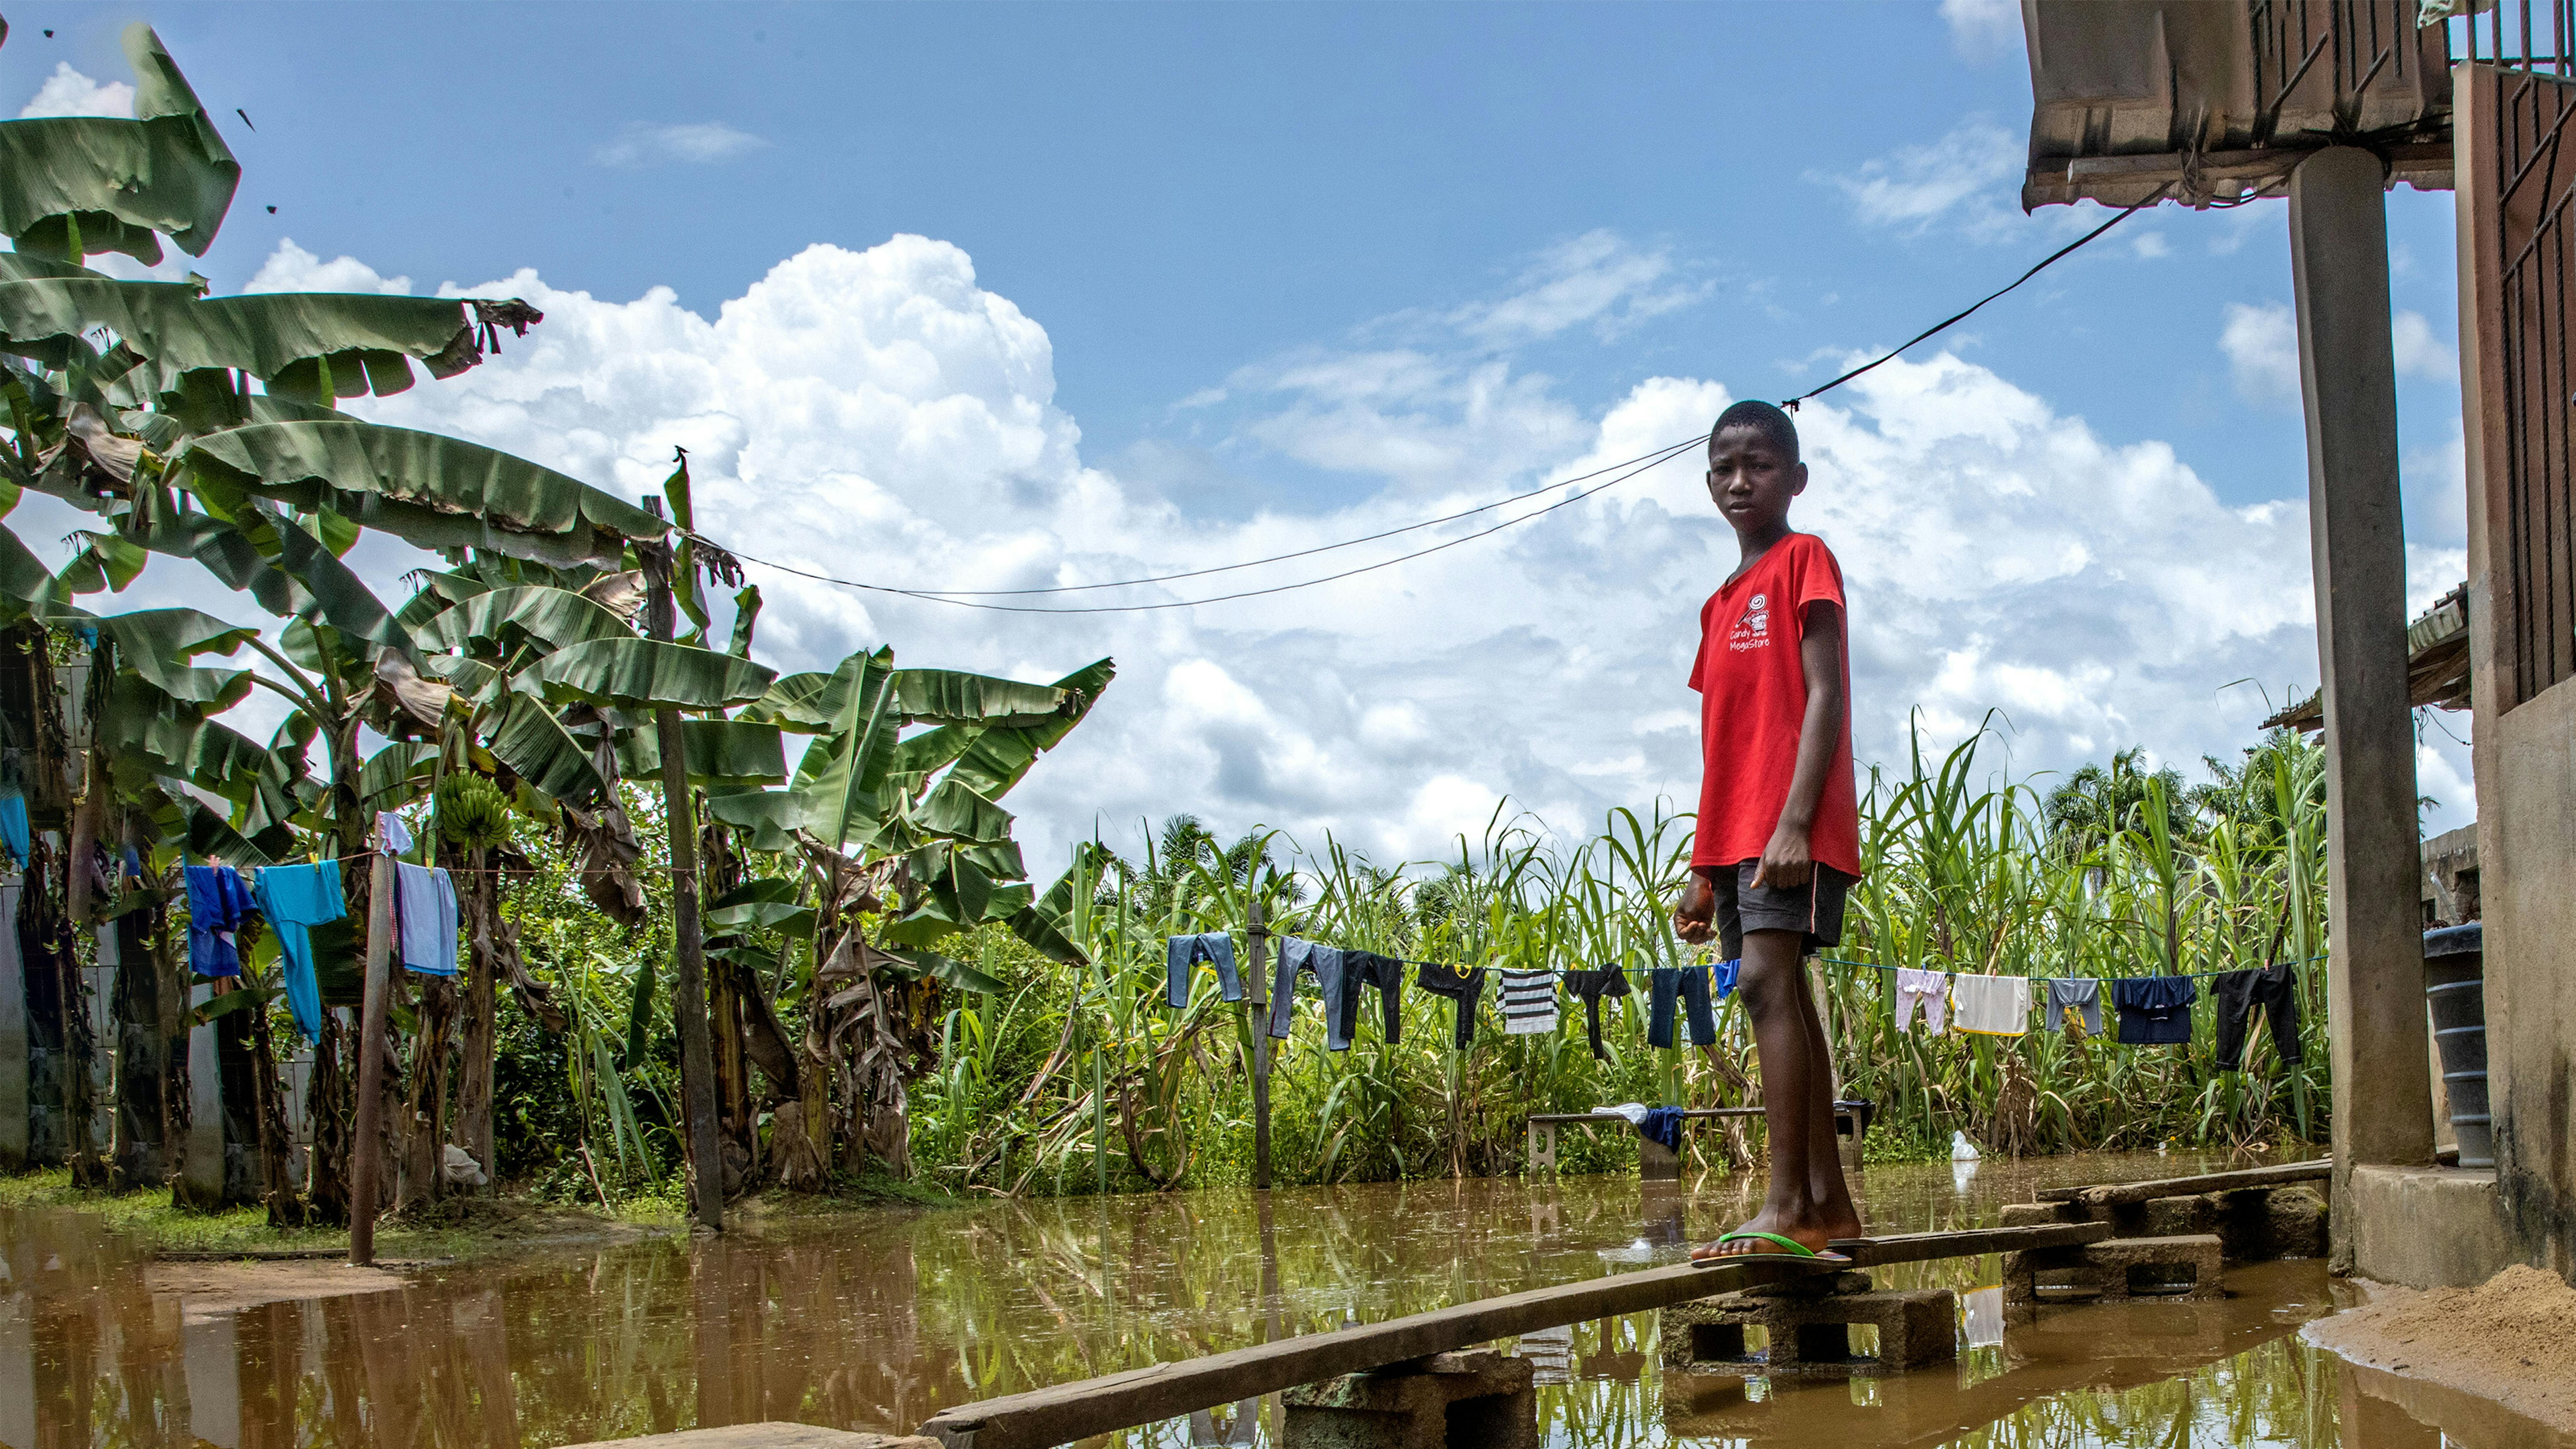 Nigeria - Peretimfa Germania 11 anni, è in piedi sulla passerella improvvisata di legno davanti alla sua casa colpita dall'alluvione a Sagbama, Bayelsa